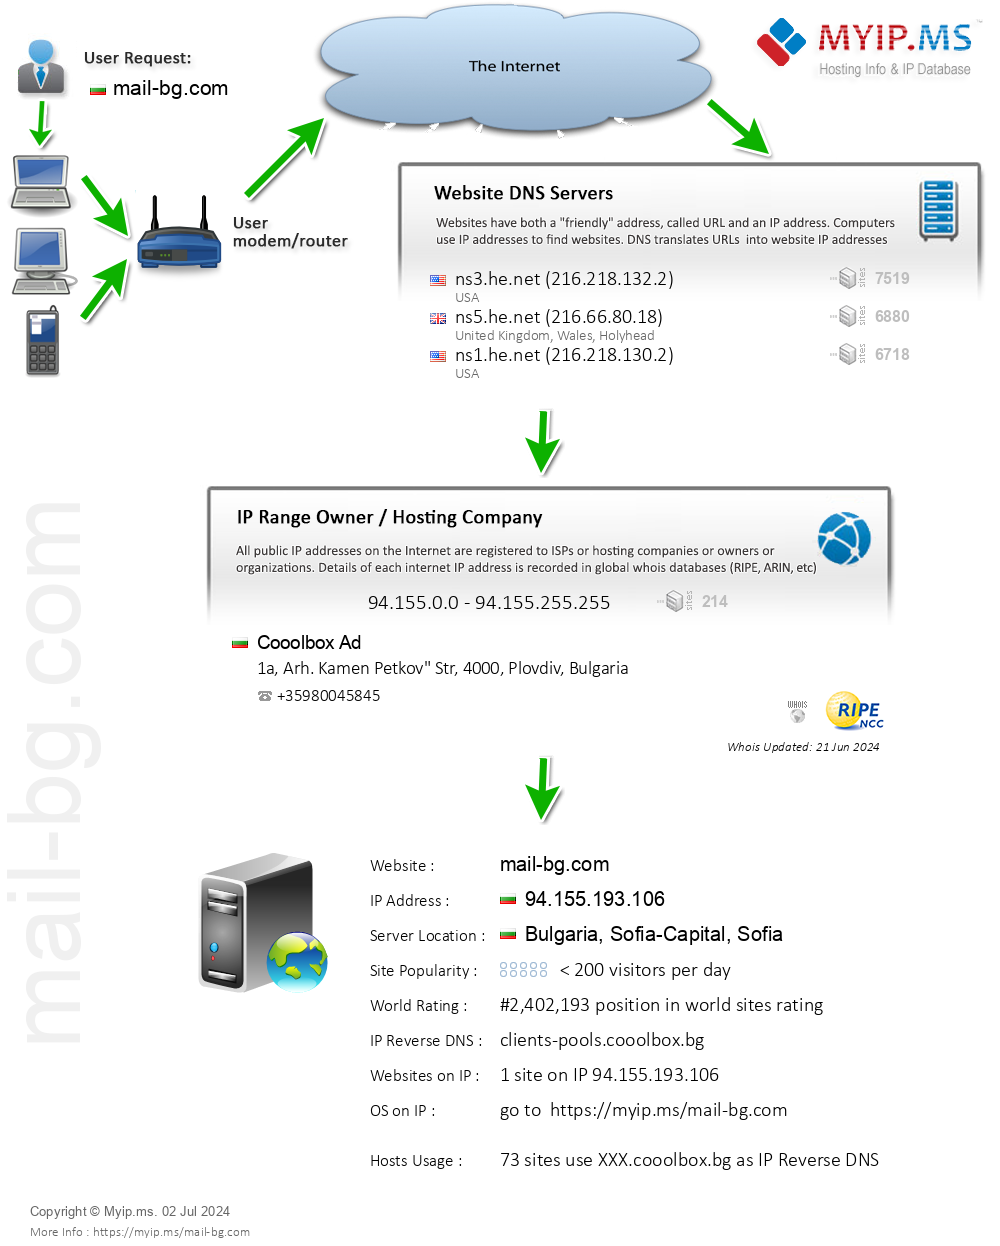 Mail-bg.com - Website Hosting Visual IP Diagram